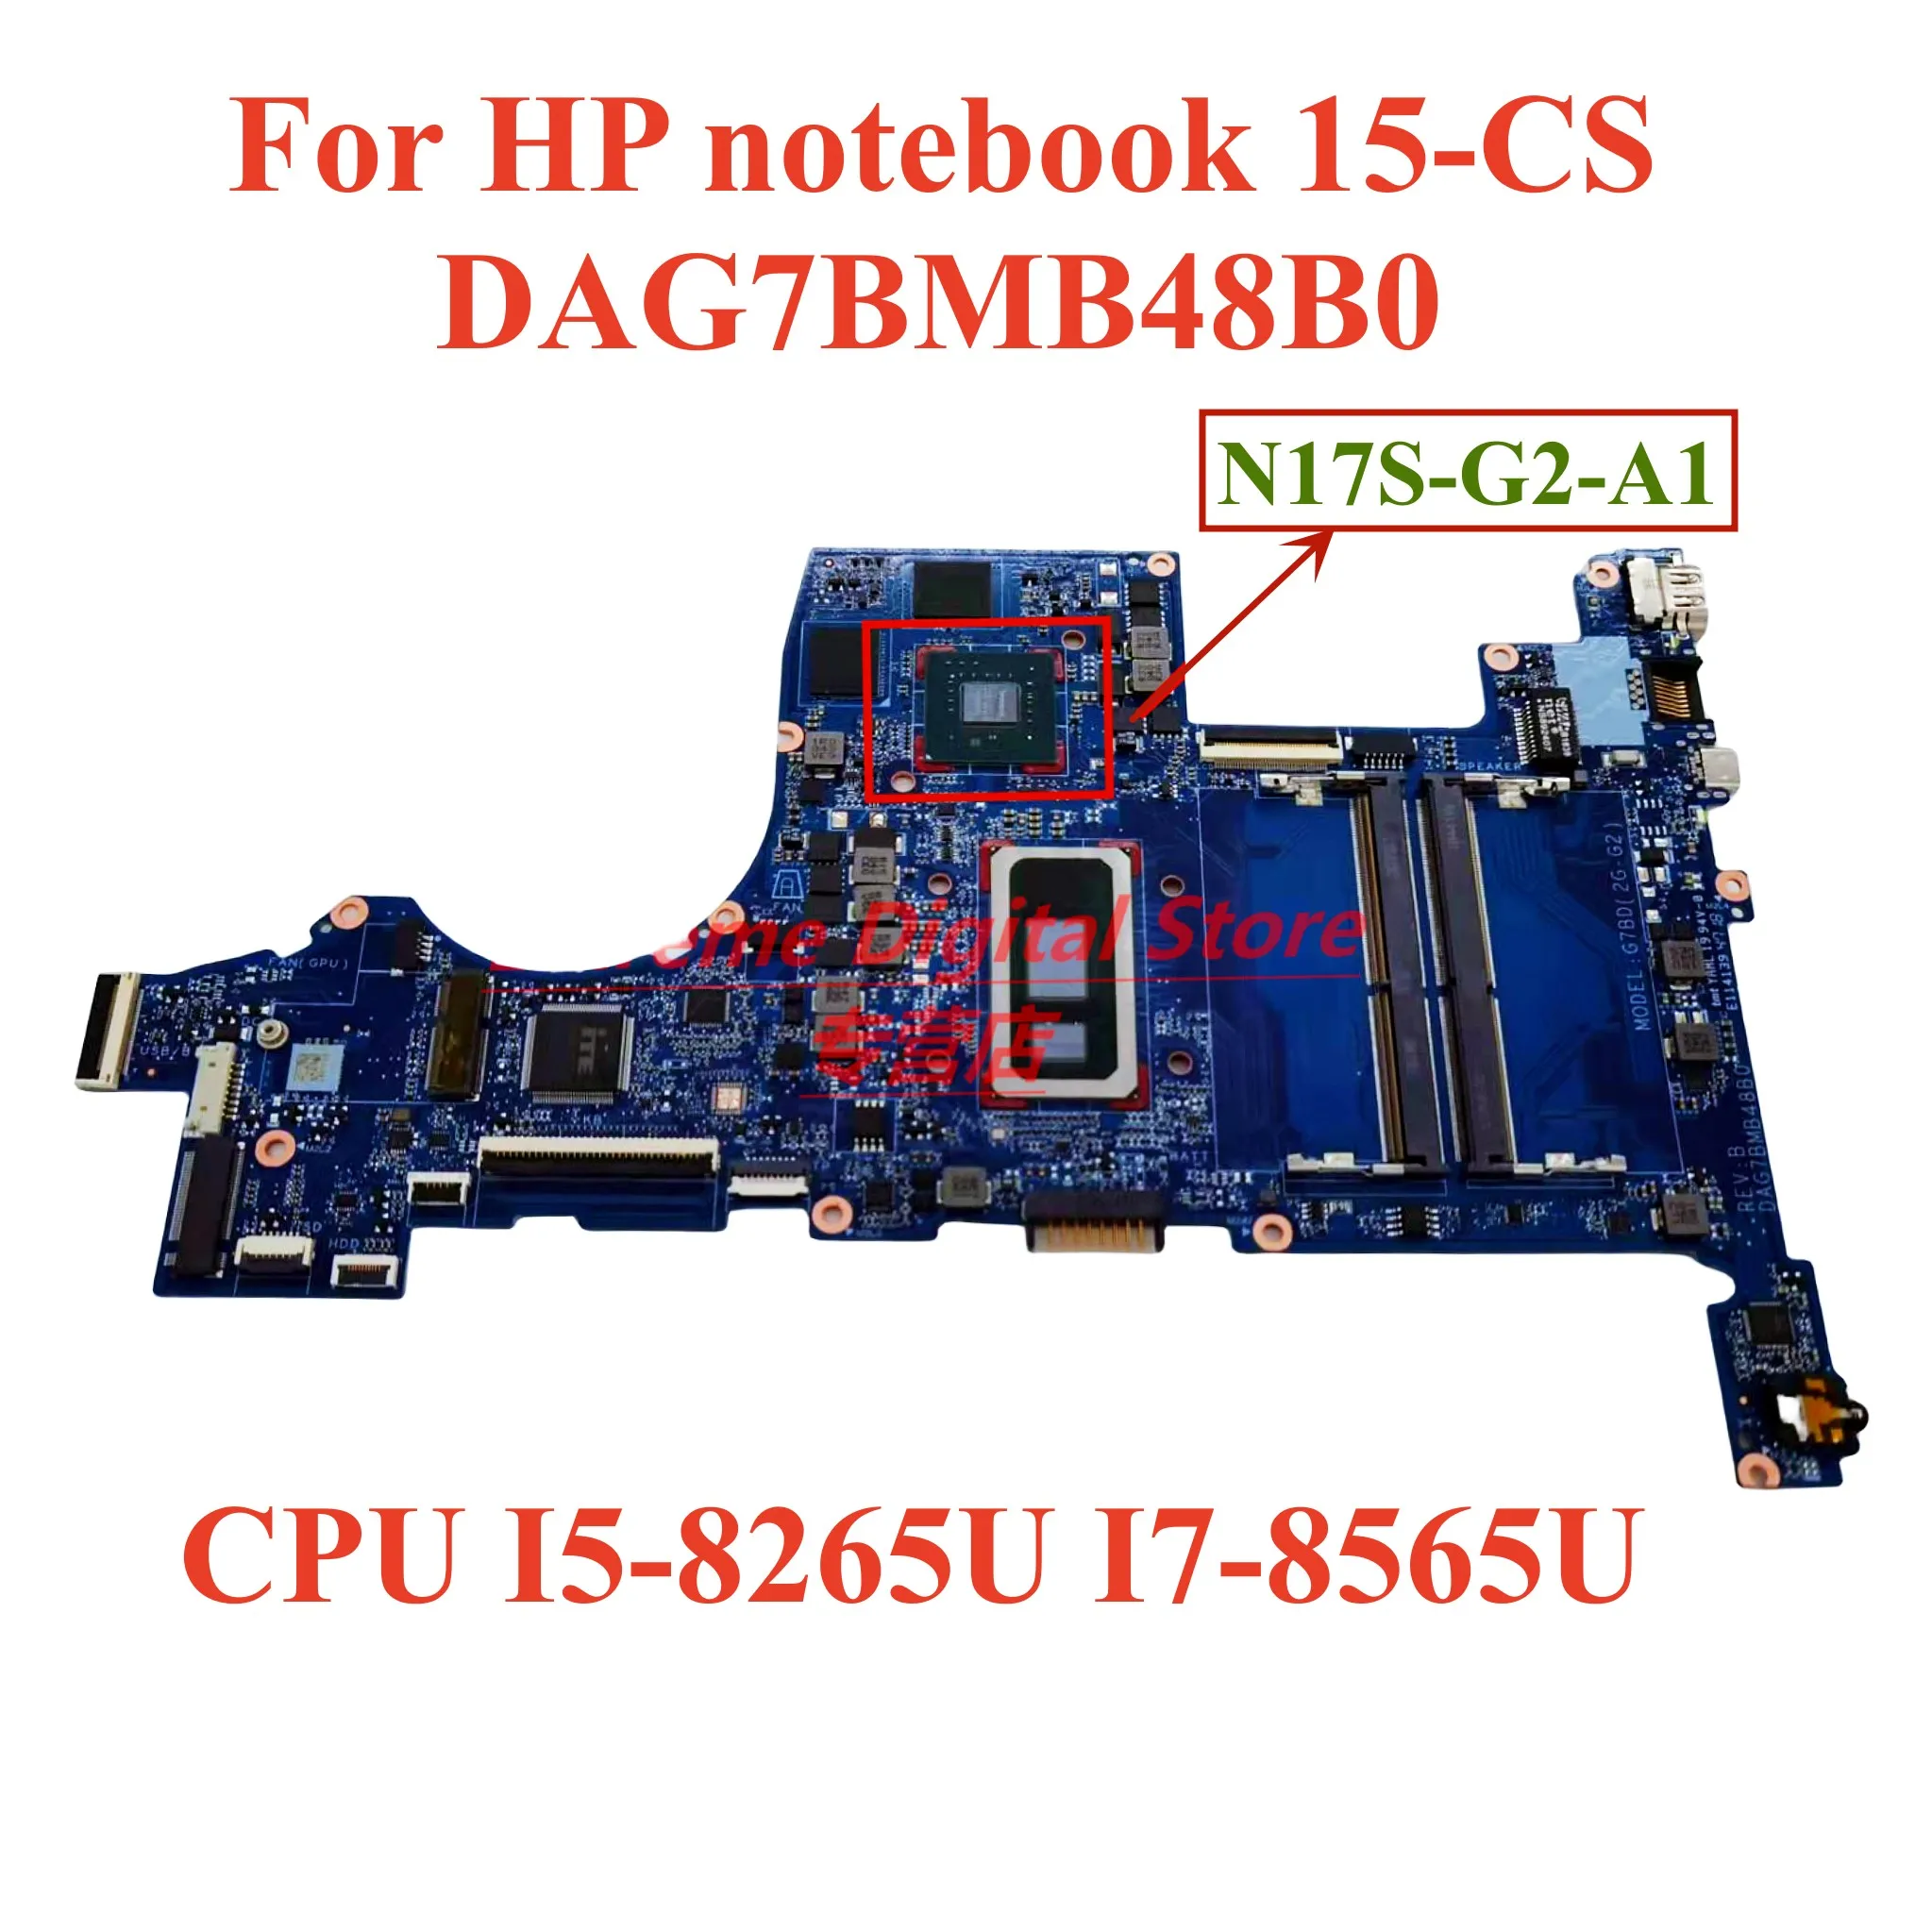 Для ноутбука HP Notebook 15-CS материнская плата ноутбука DAG7BMB48B0 с процессором I5-8265U I7-8565U GPU N17S-G2-A1 100% Протестирована Полная Работа Изображение 0